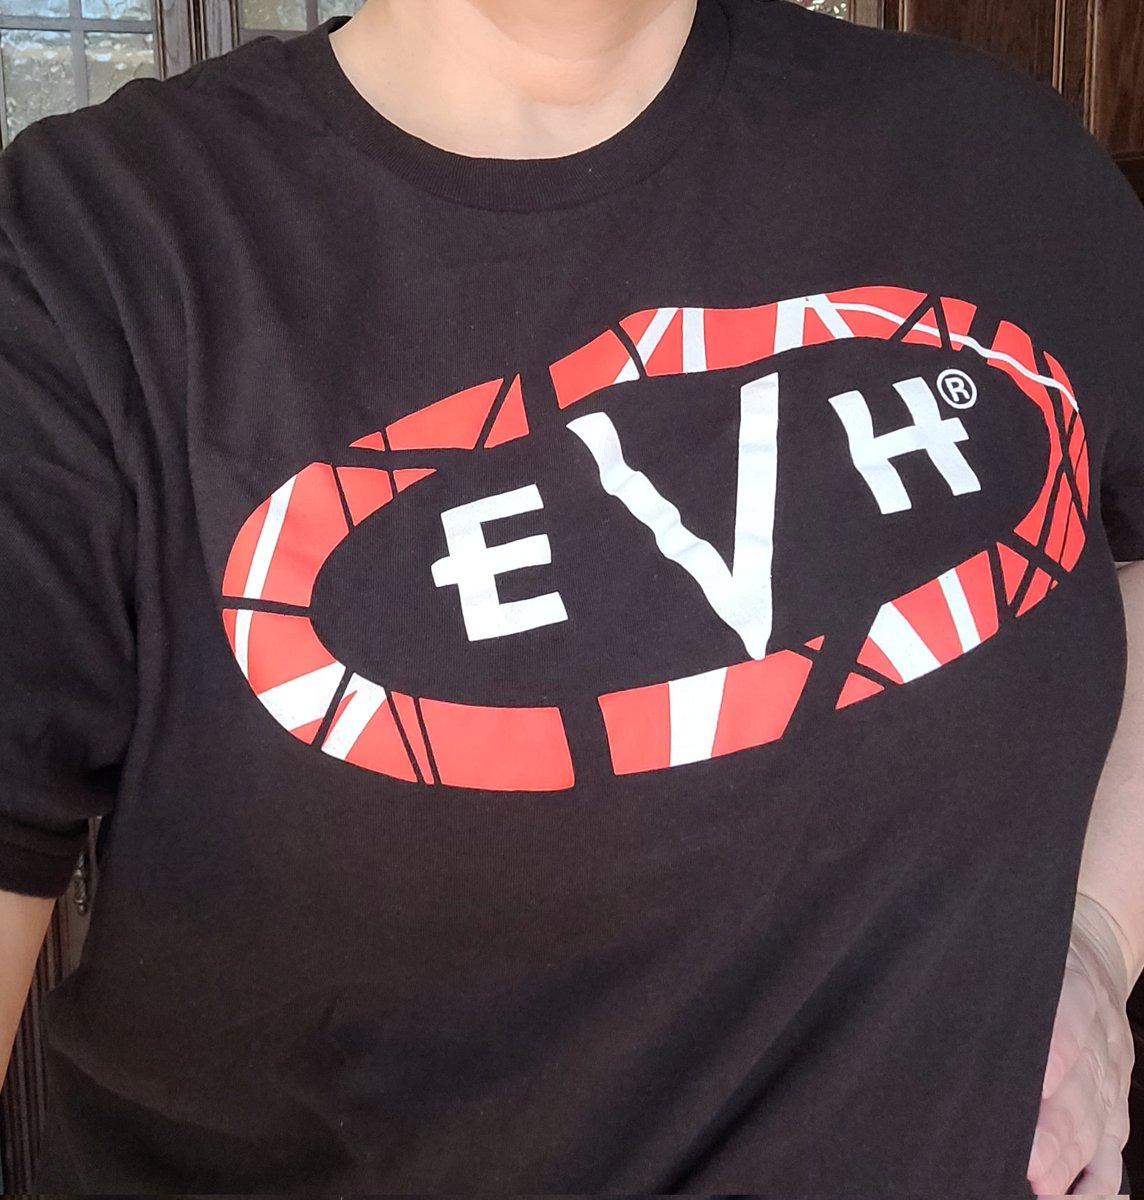 Today's T-shirt 🎸🤟🏻🤟🏻🎸
#EddieVanHalen
#VanHalen
#VanRoth